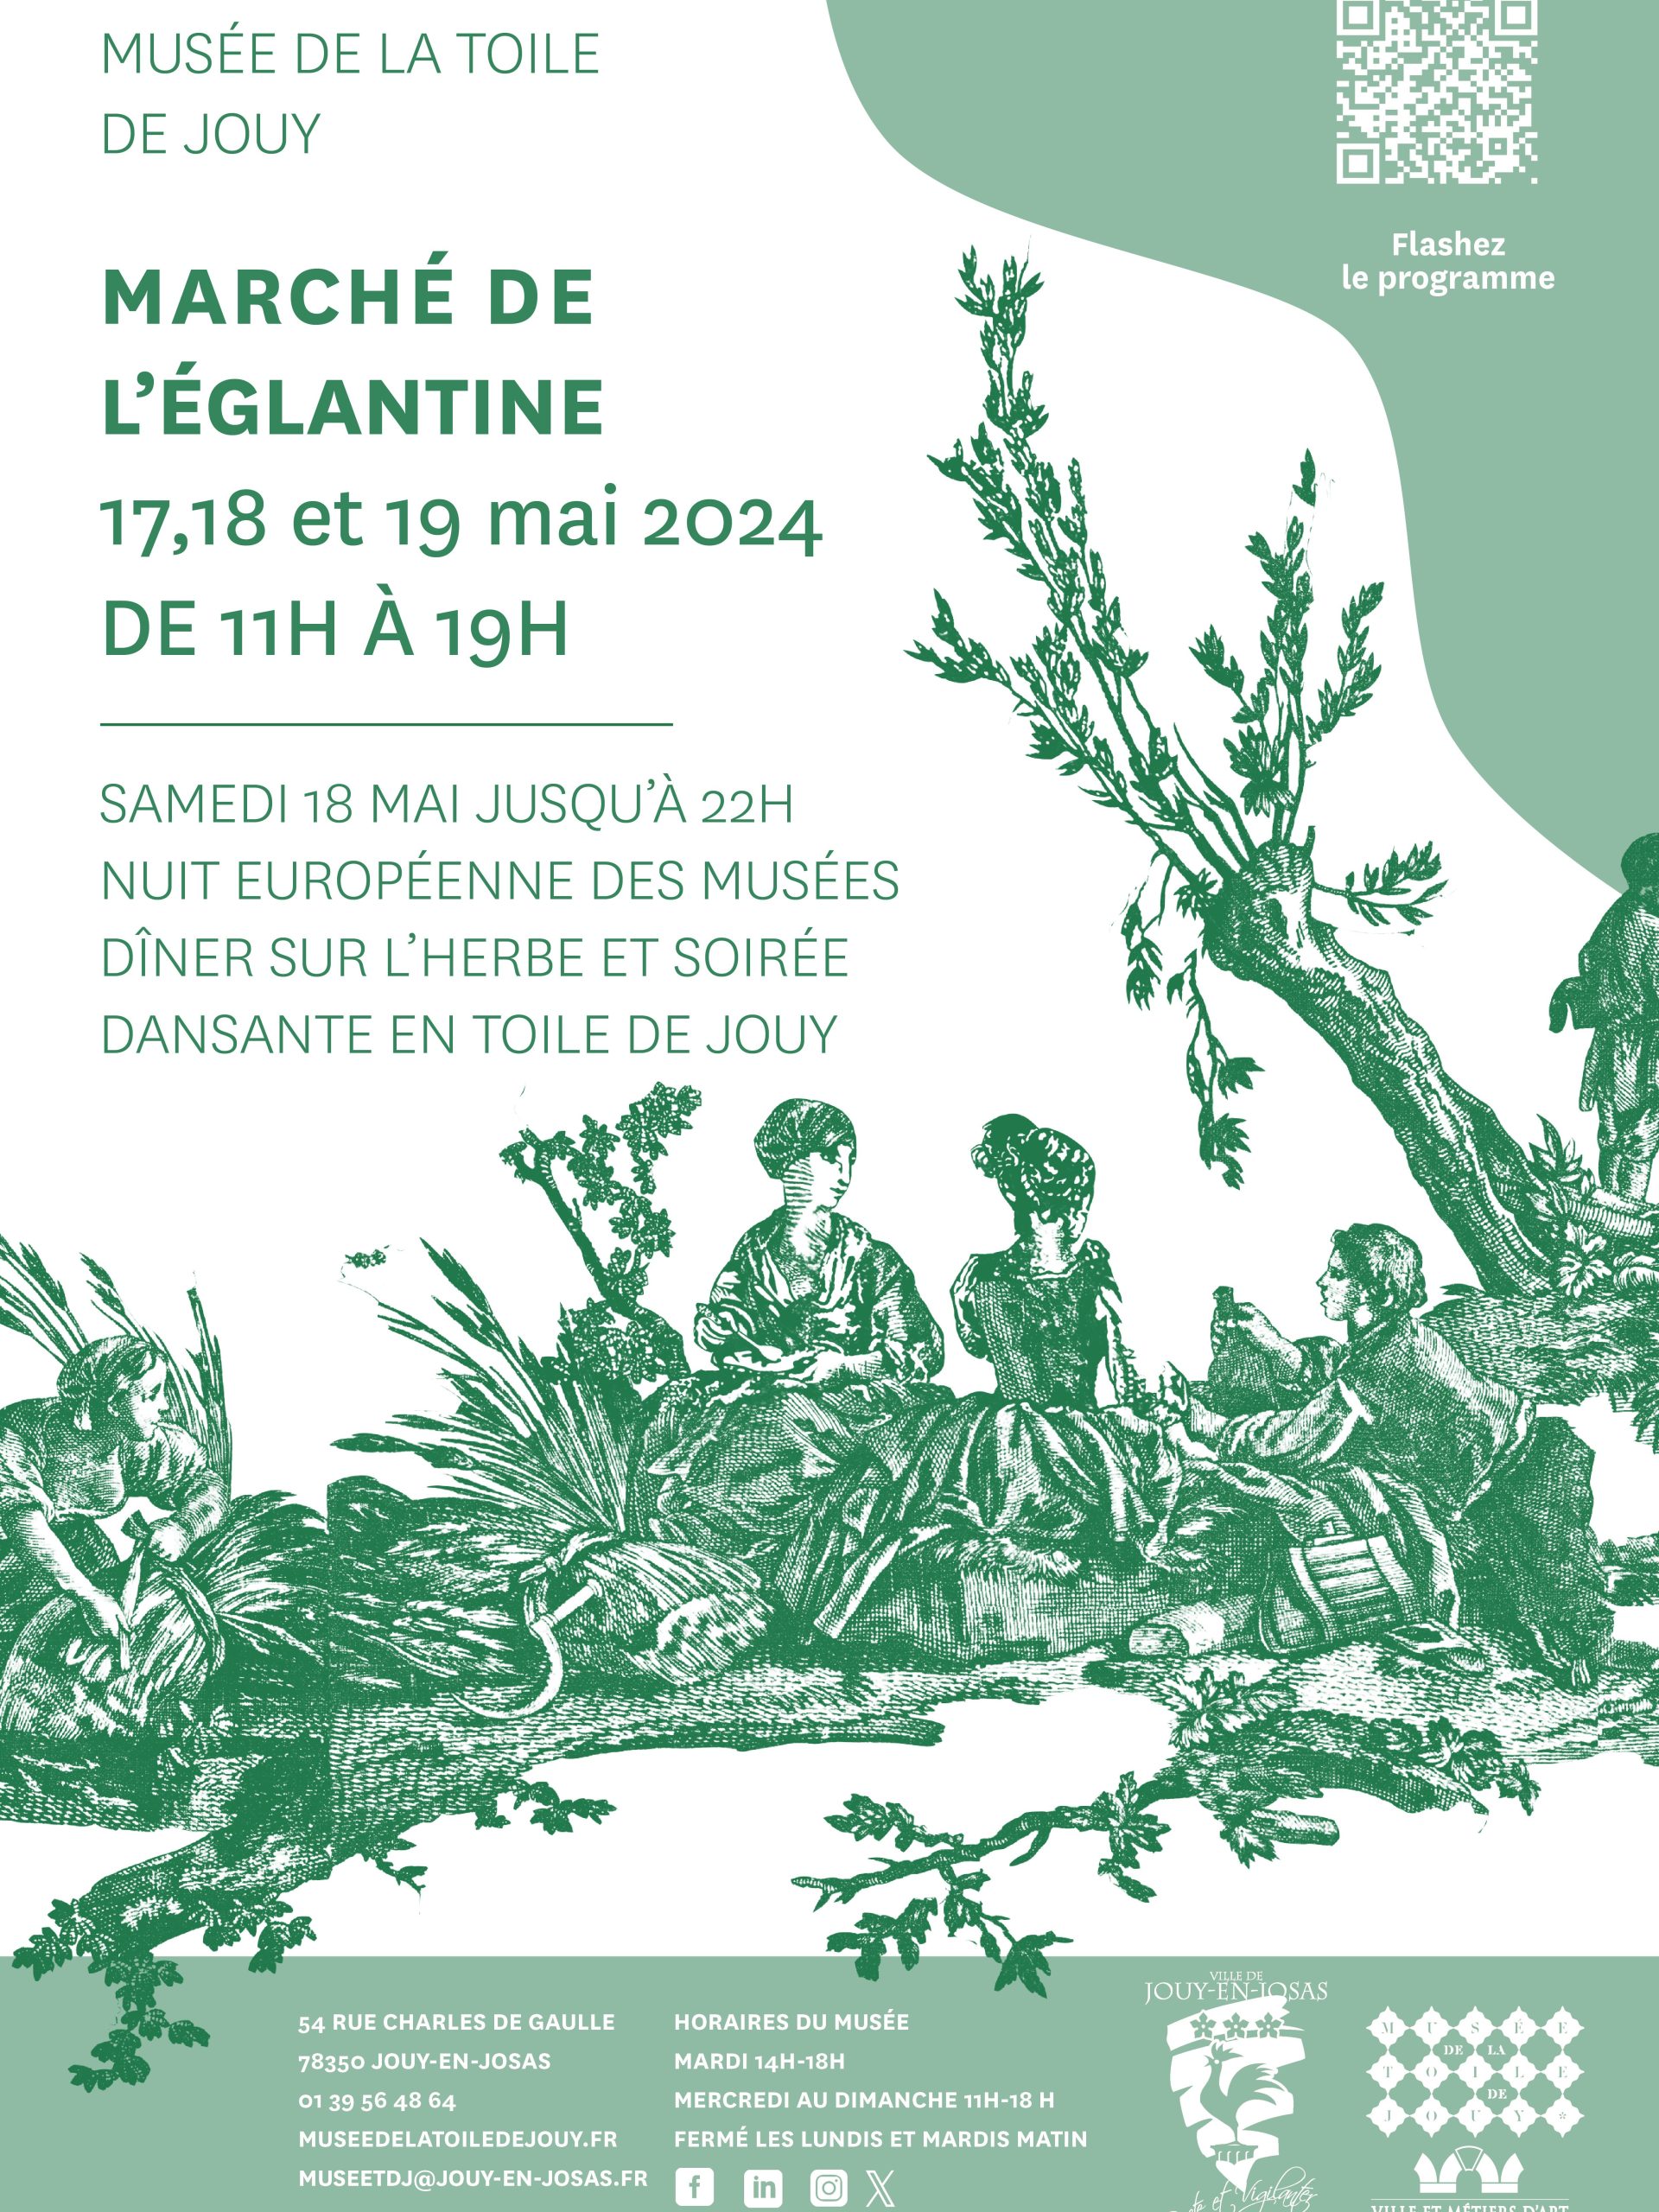 Marché de l’Eglantine / Nuit des musées au Musée de la Toile de Jouy